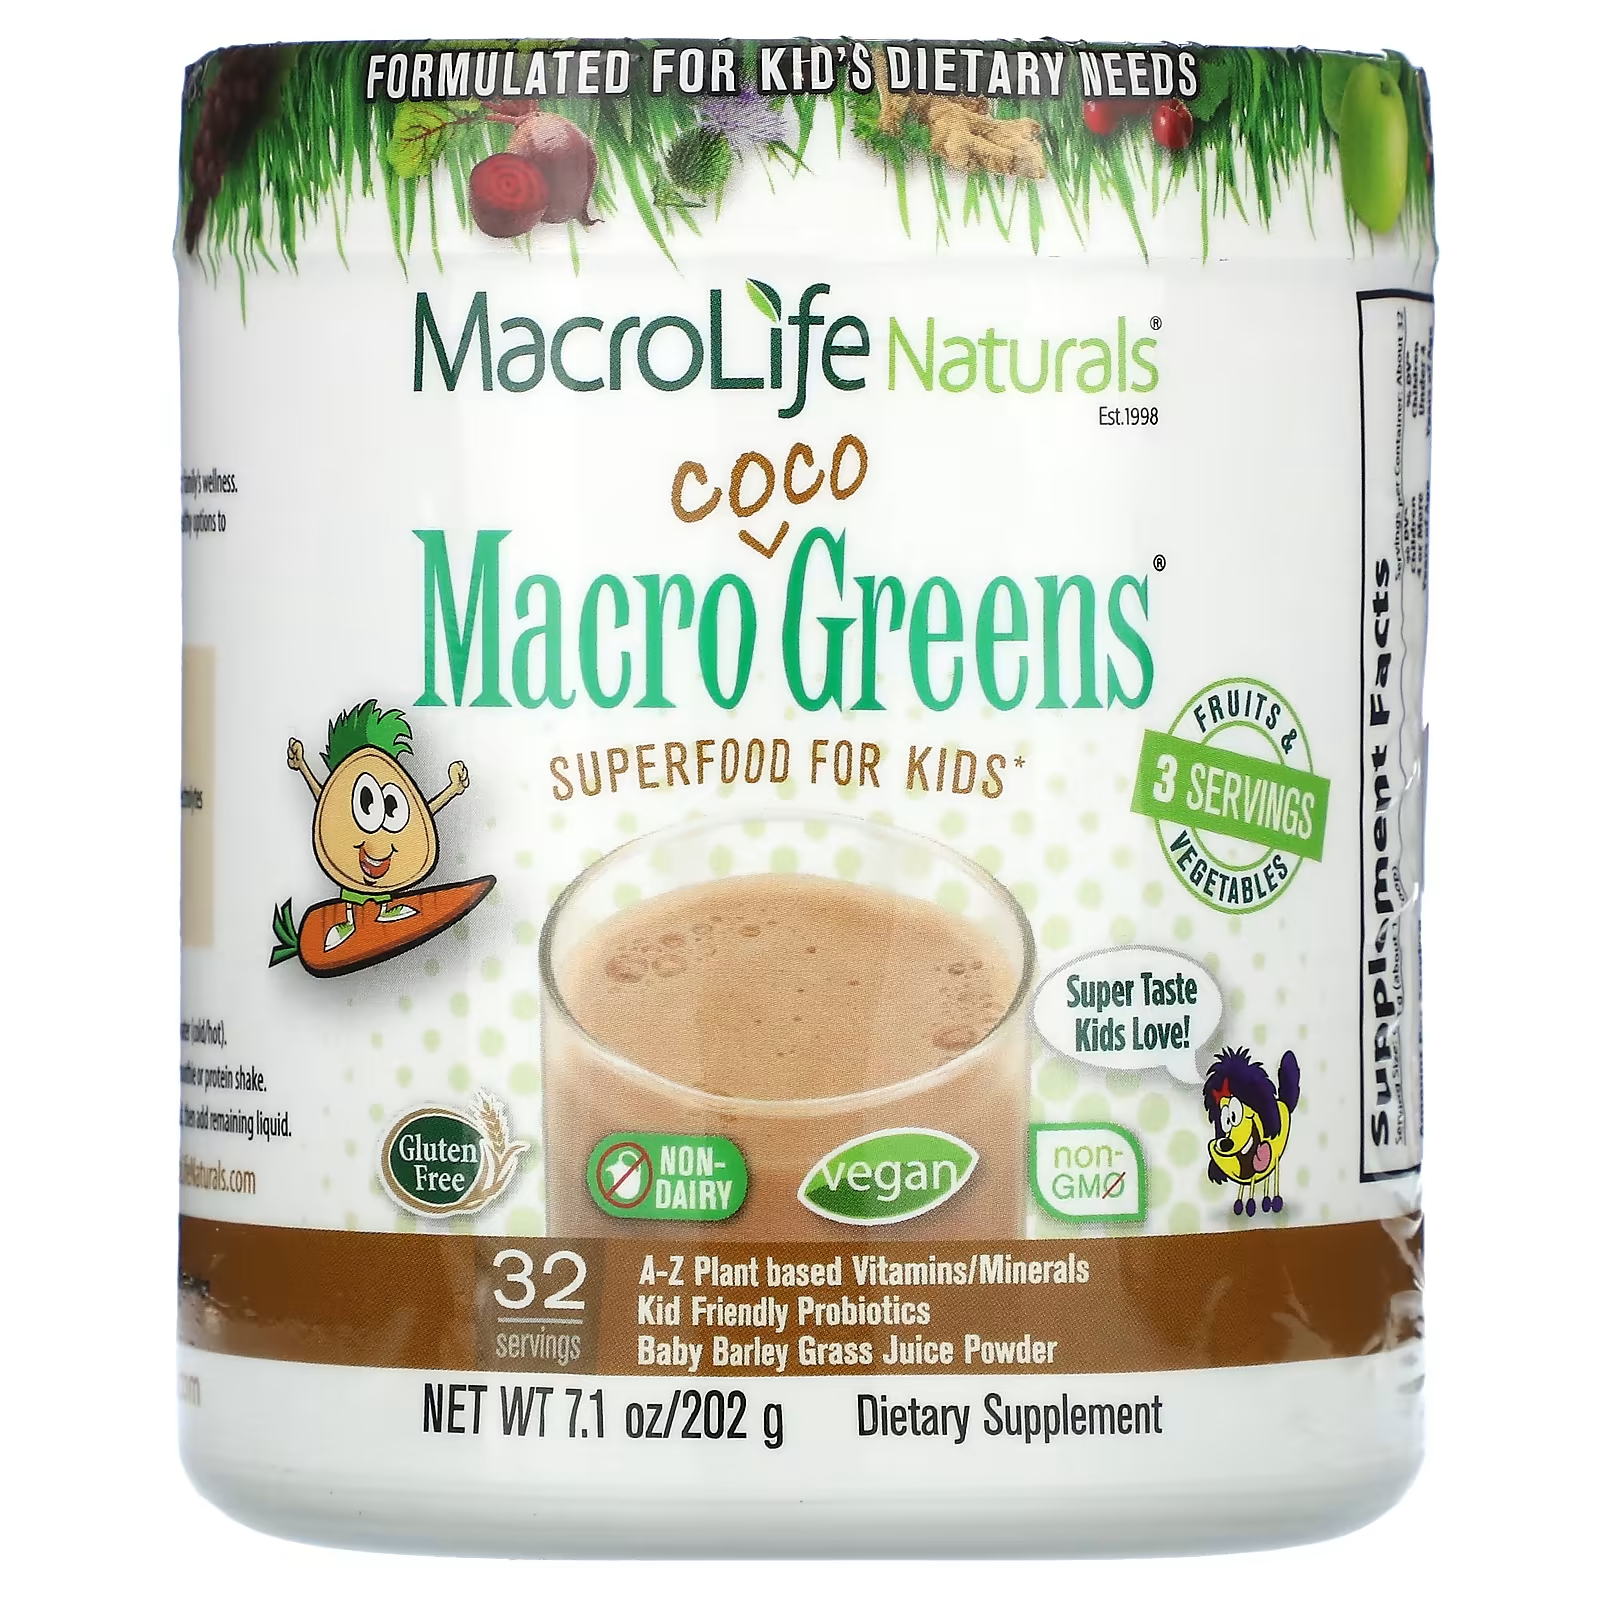 Пищевая добавка Macrolife Naturals Macro Coco Greens для детей, 202 г macrolife naturals macropets ежедневный суперфуд для собак и кошек 180 г 6 35 унции